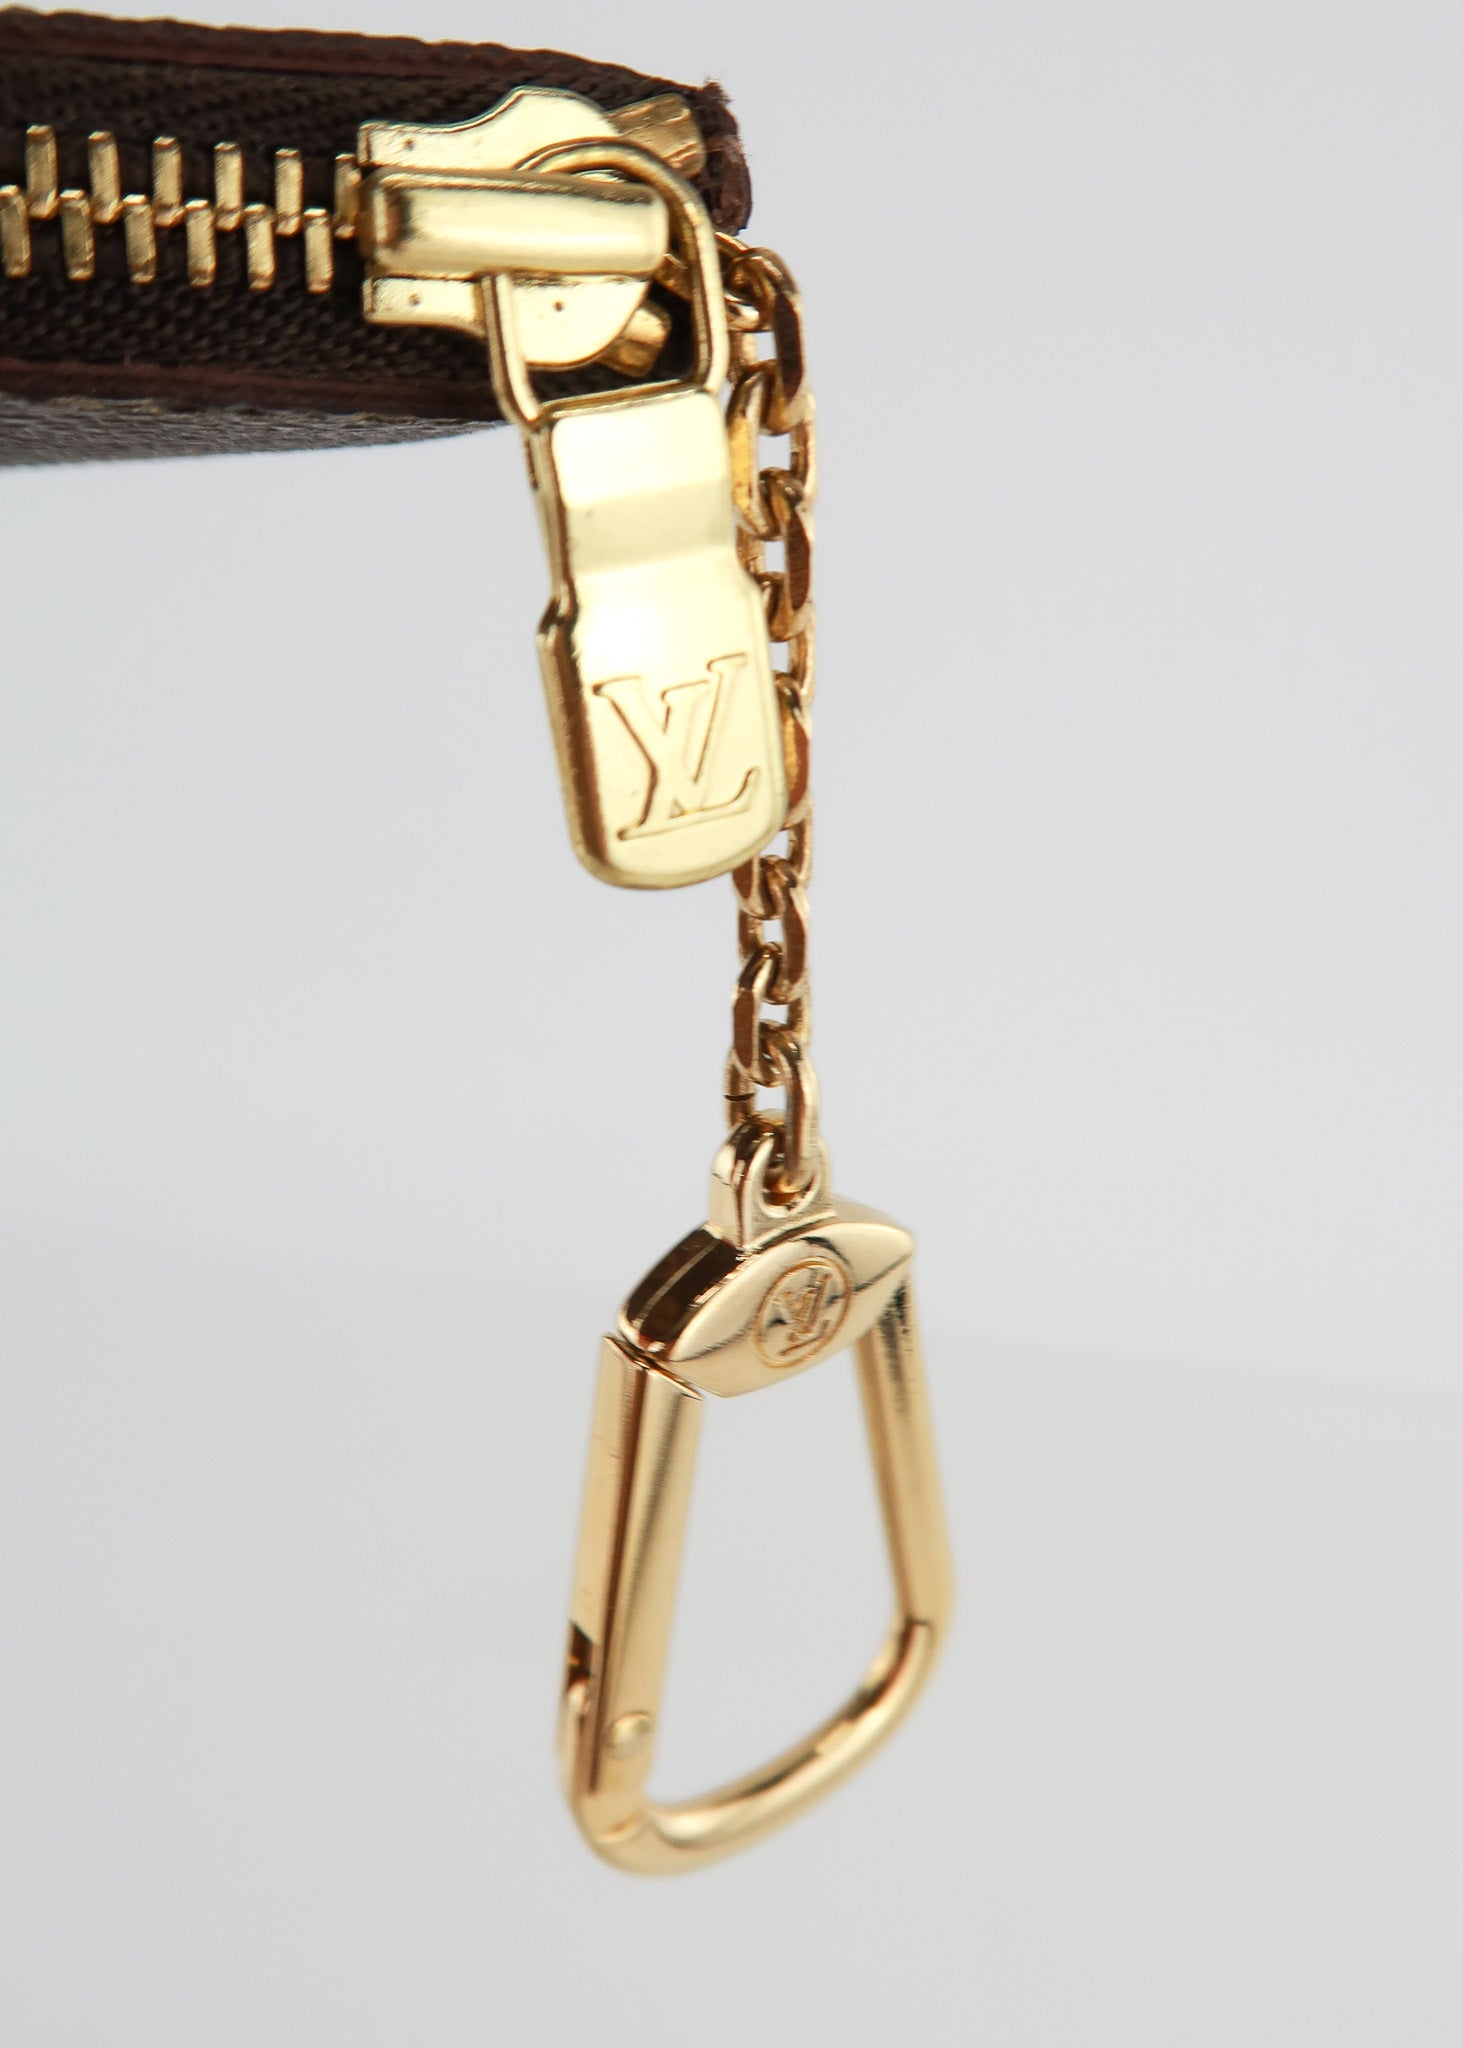 Louis Vuitton key cles monogram CA0955